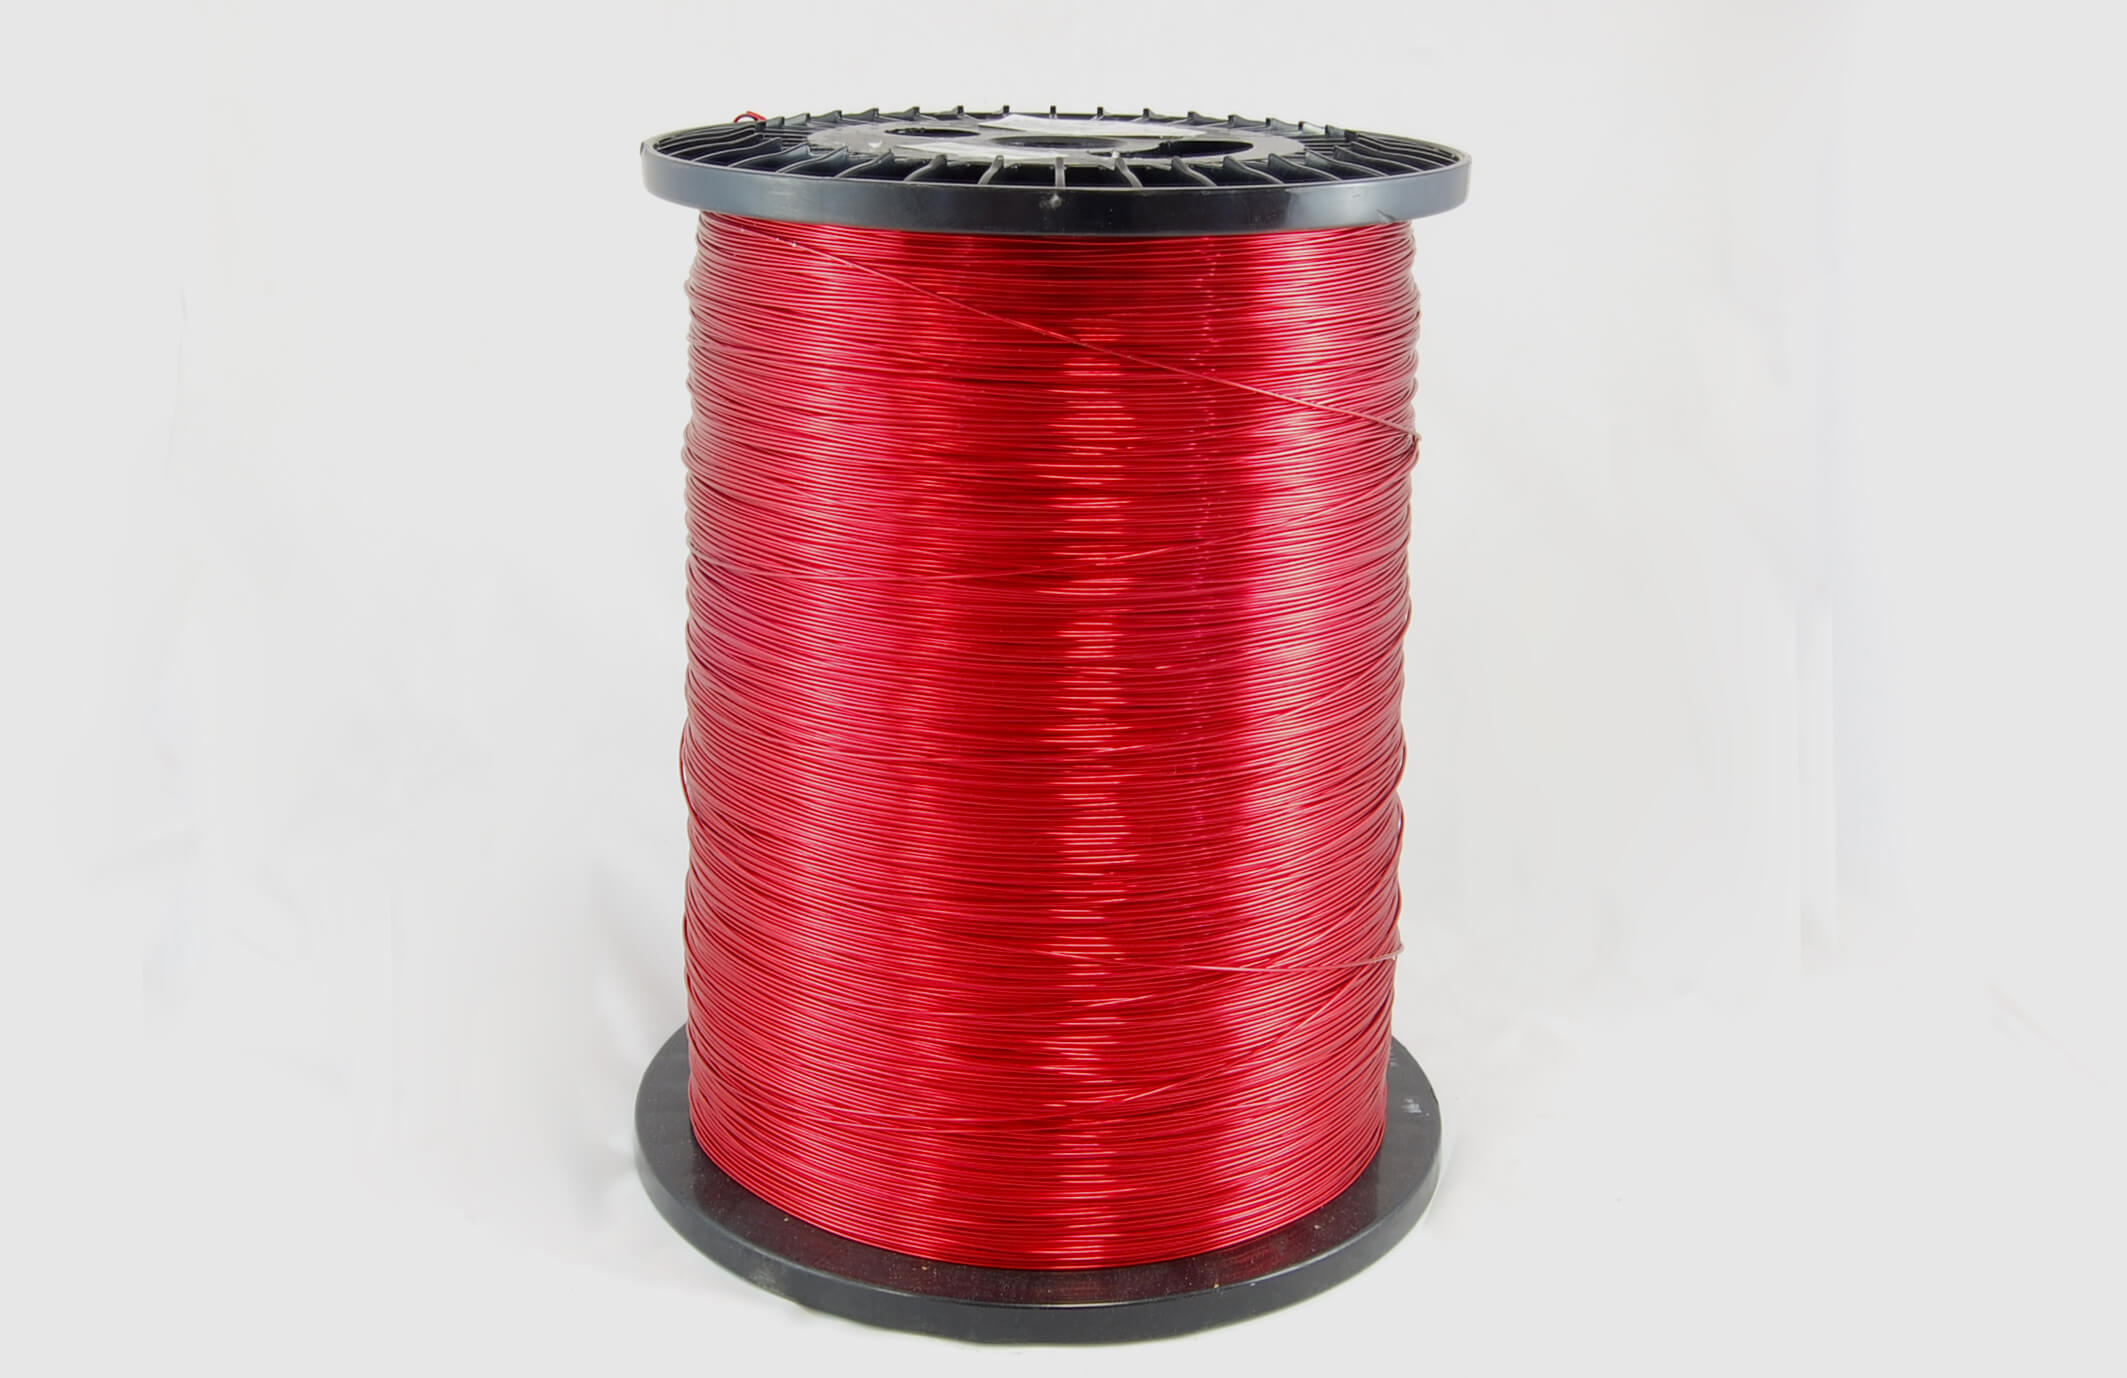 #22 Single Nysol  Round SNSR MW 80 Copper Magnet Wire 155°C, red, 85 LB box (average wght.)